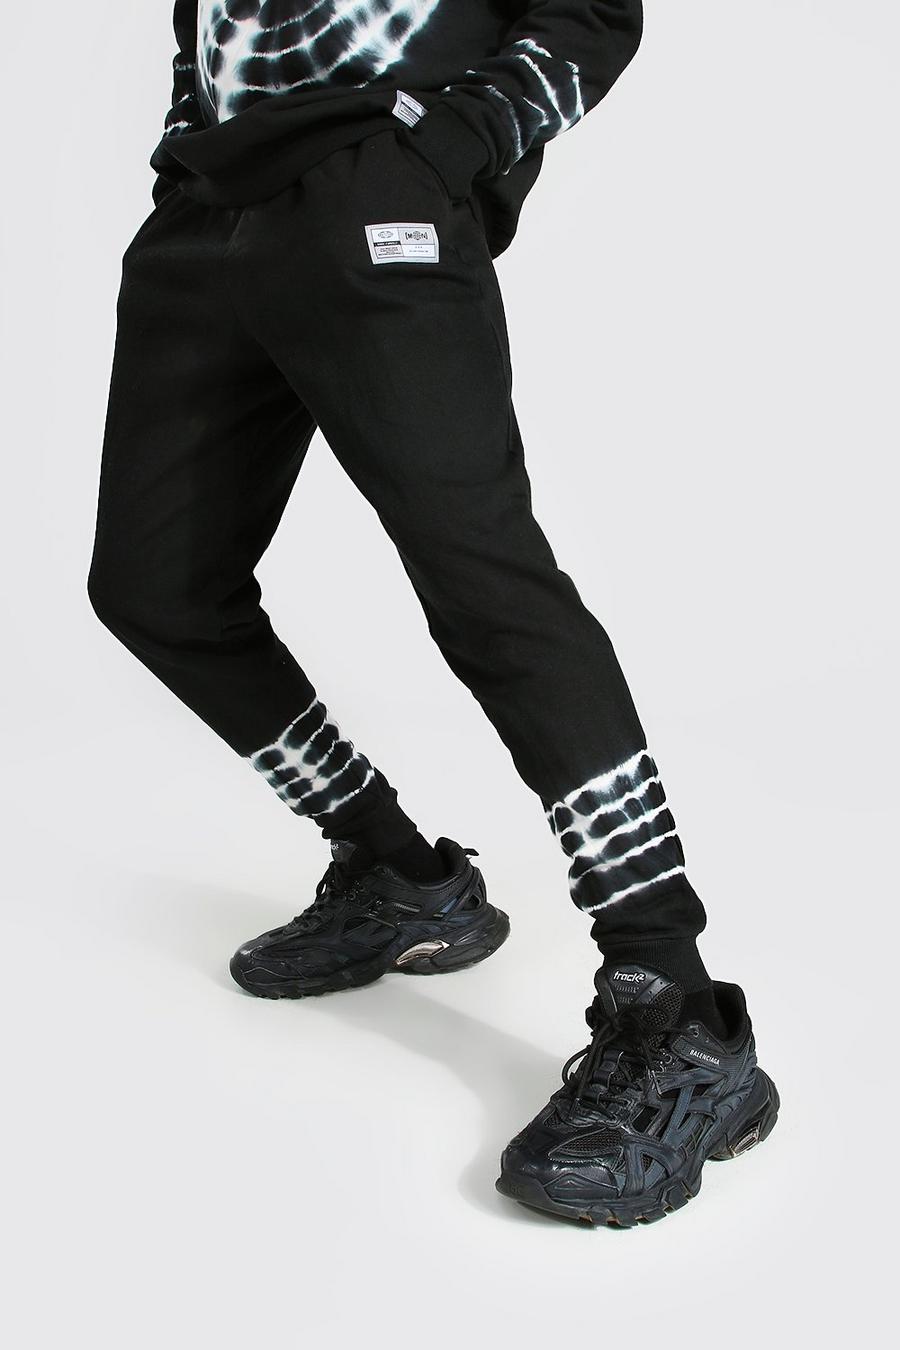 Pantaloni tuta Regular Fit Man in fantasia tie dye, Black negro image number 1